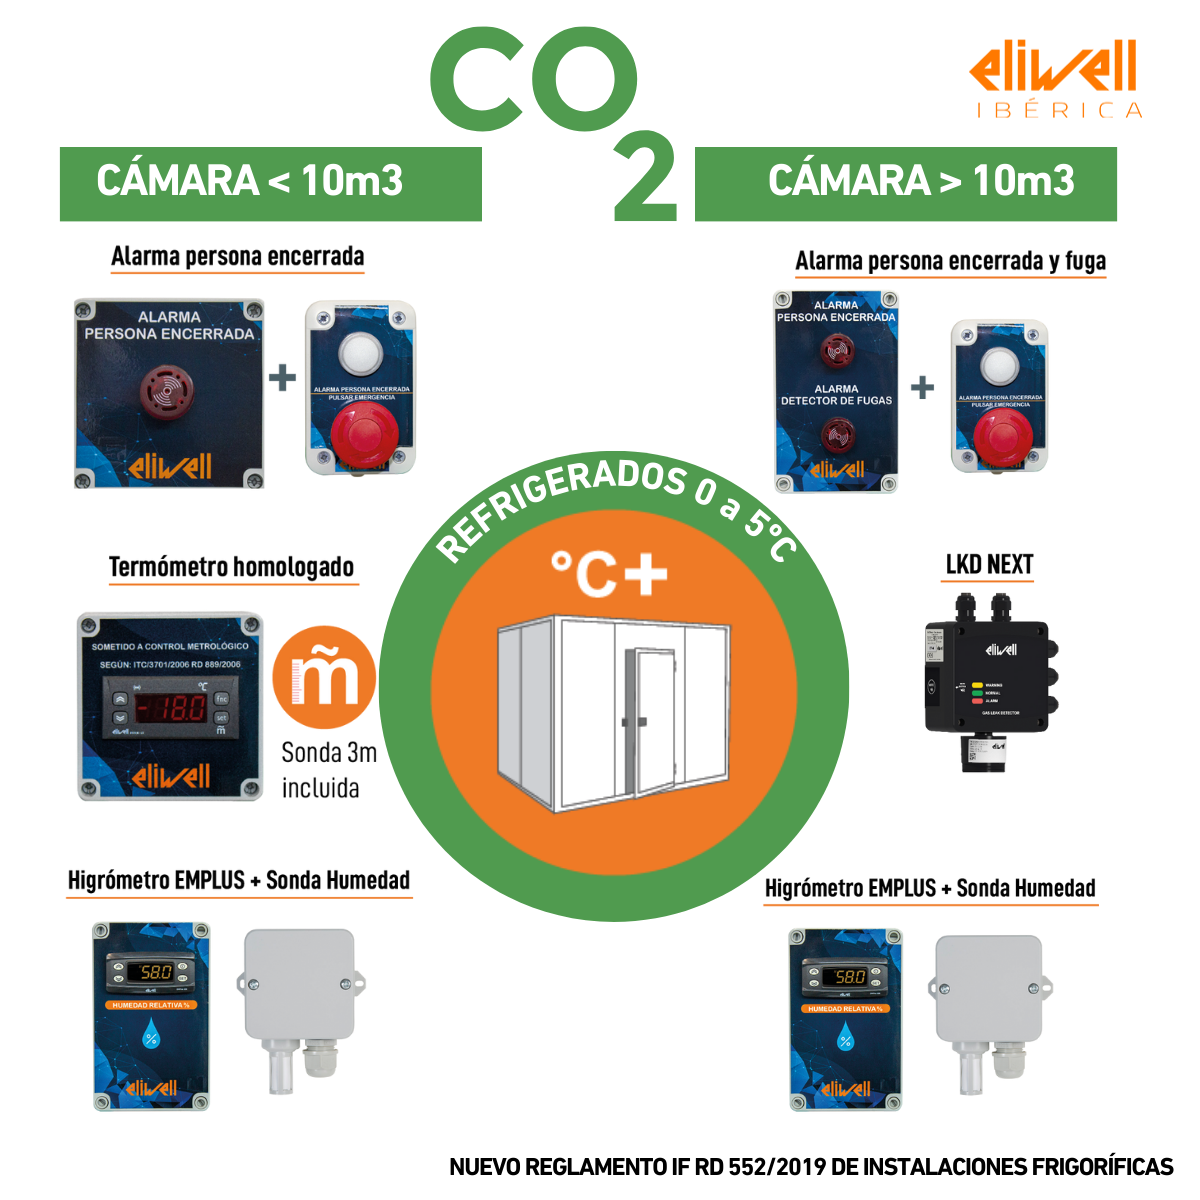 Imagem com os sistemas de alarme e sinalização exigidos pela regulamentação em vigor para as câmaras frigoríficas de CO2 em Espanha.